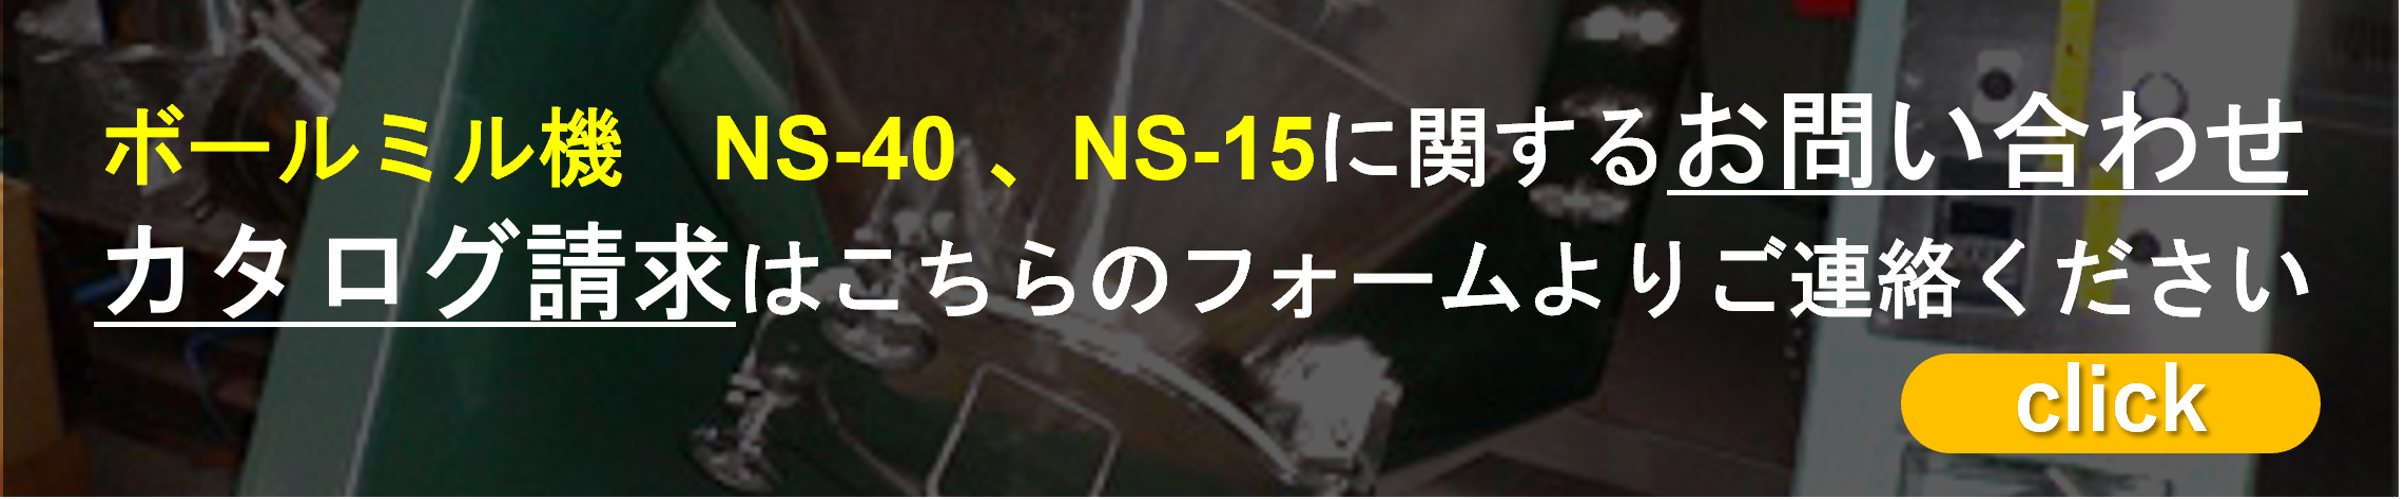 ボールミル機 NS-40 NS-15に関するお問い合わせ・カタログ請求はこちらのフォームよりご連絡ください